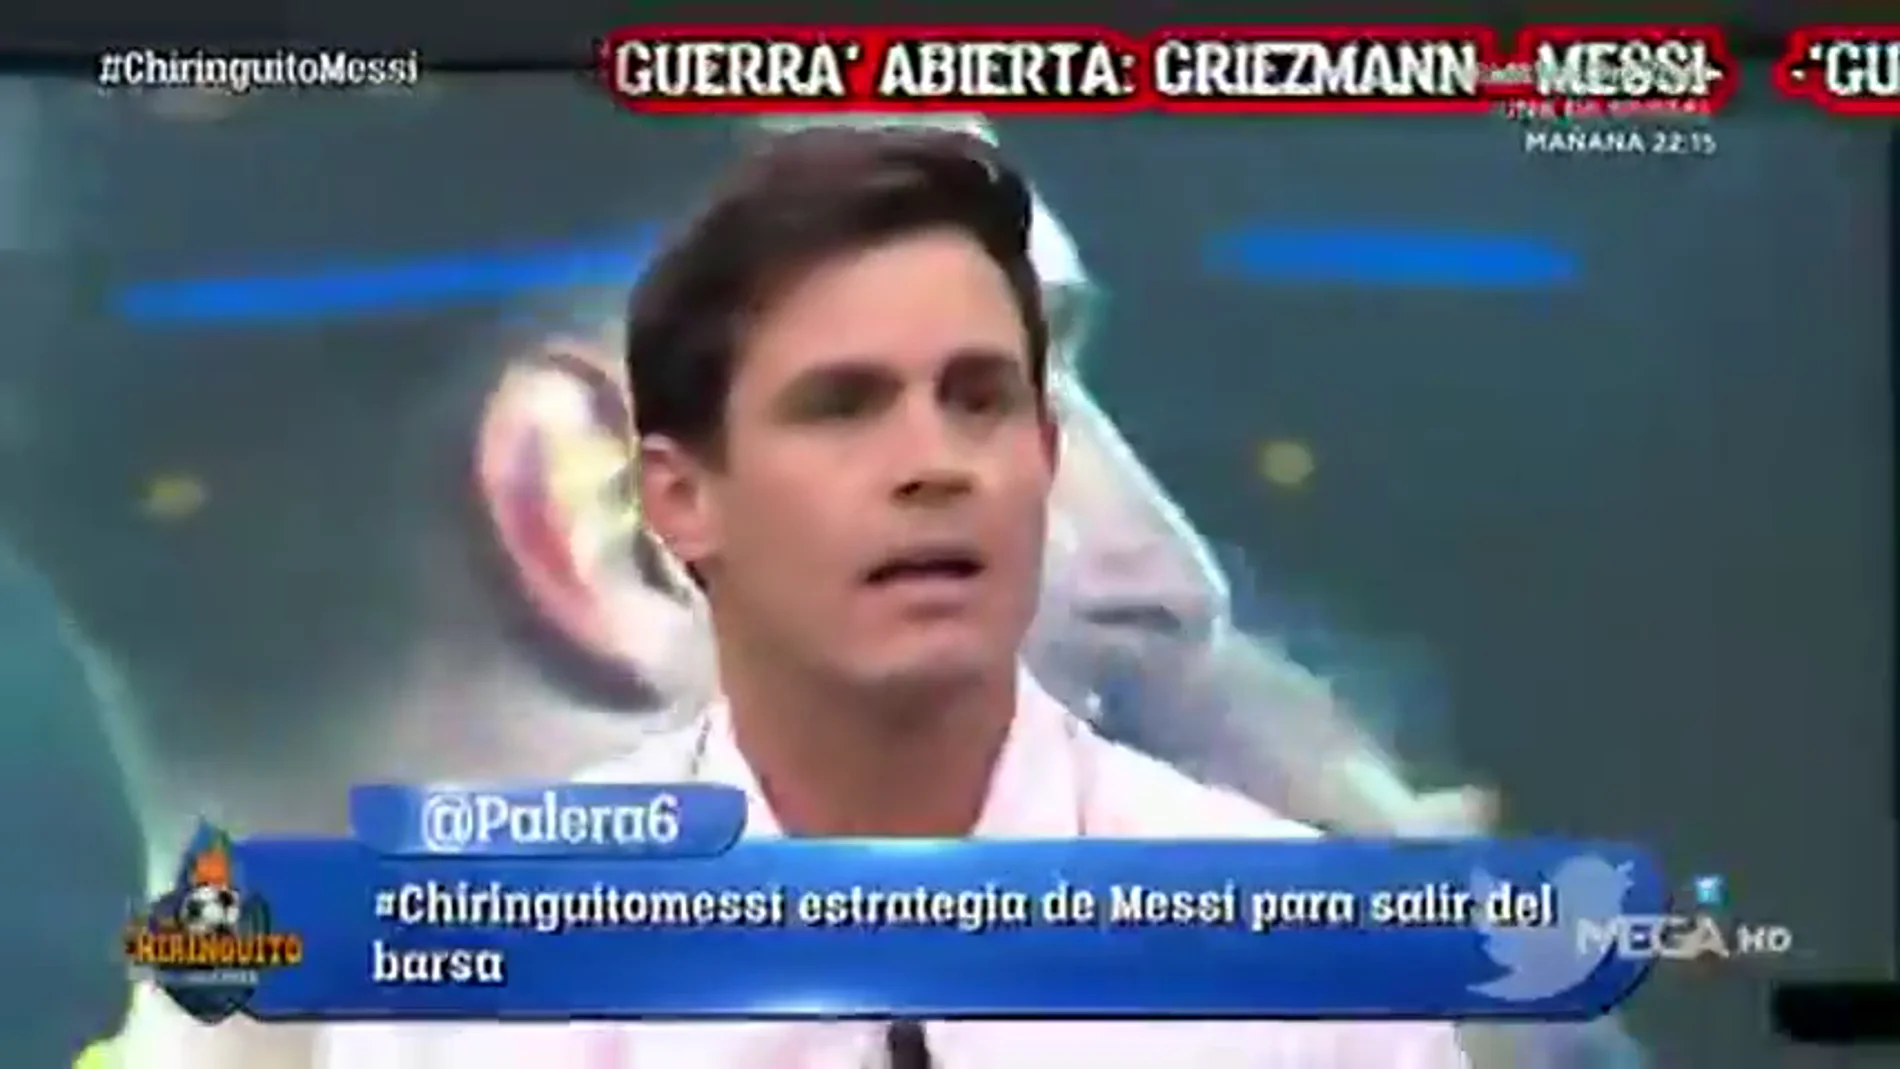 Edu Aguirre defiende a Griezmann: "¿Qué es eso de arrastrarse ante Messi?"